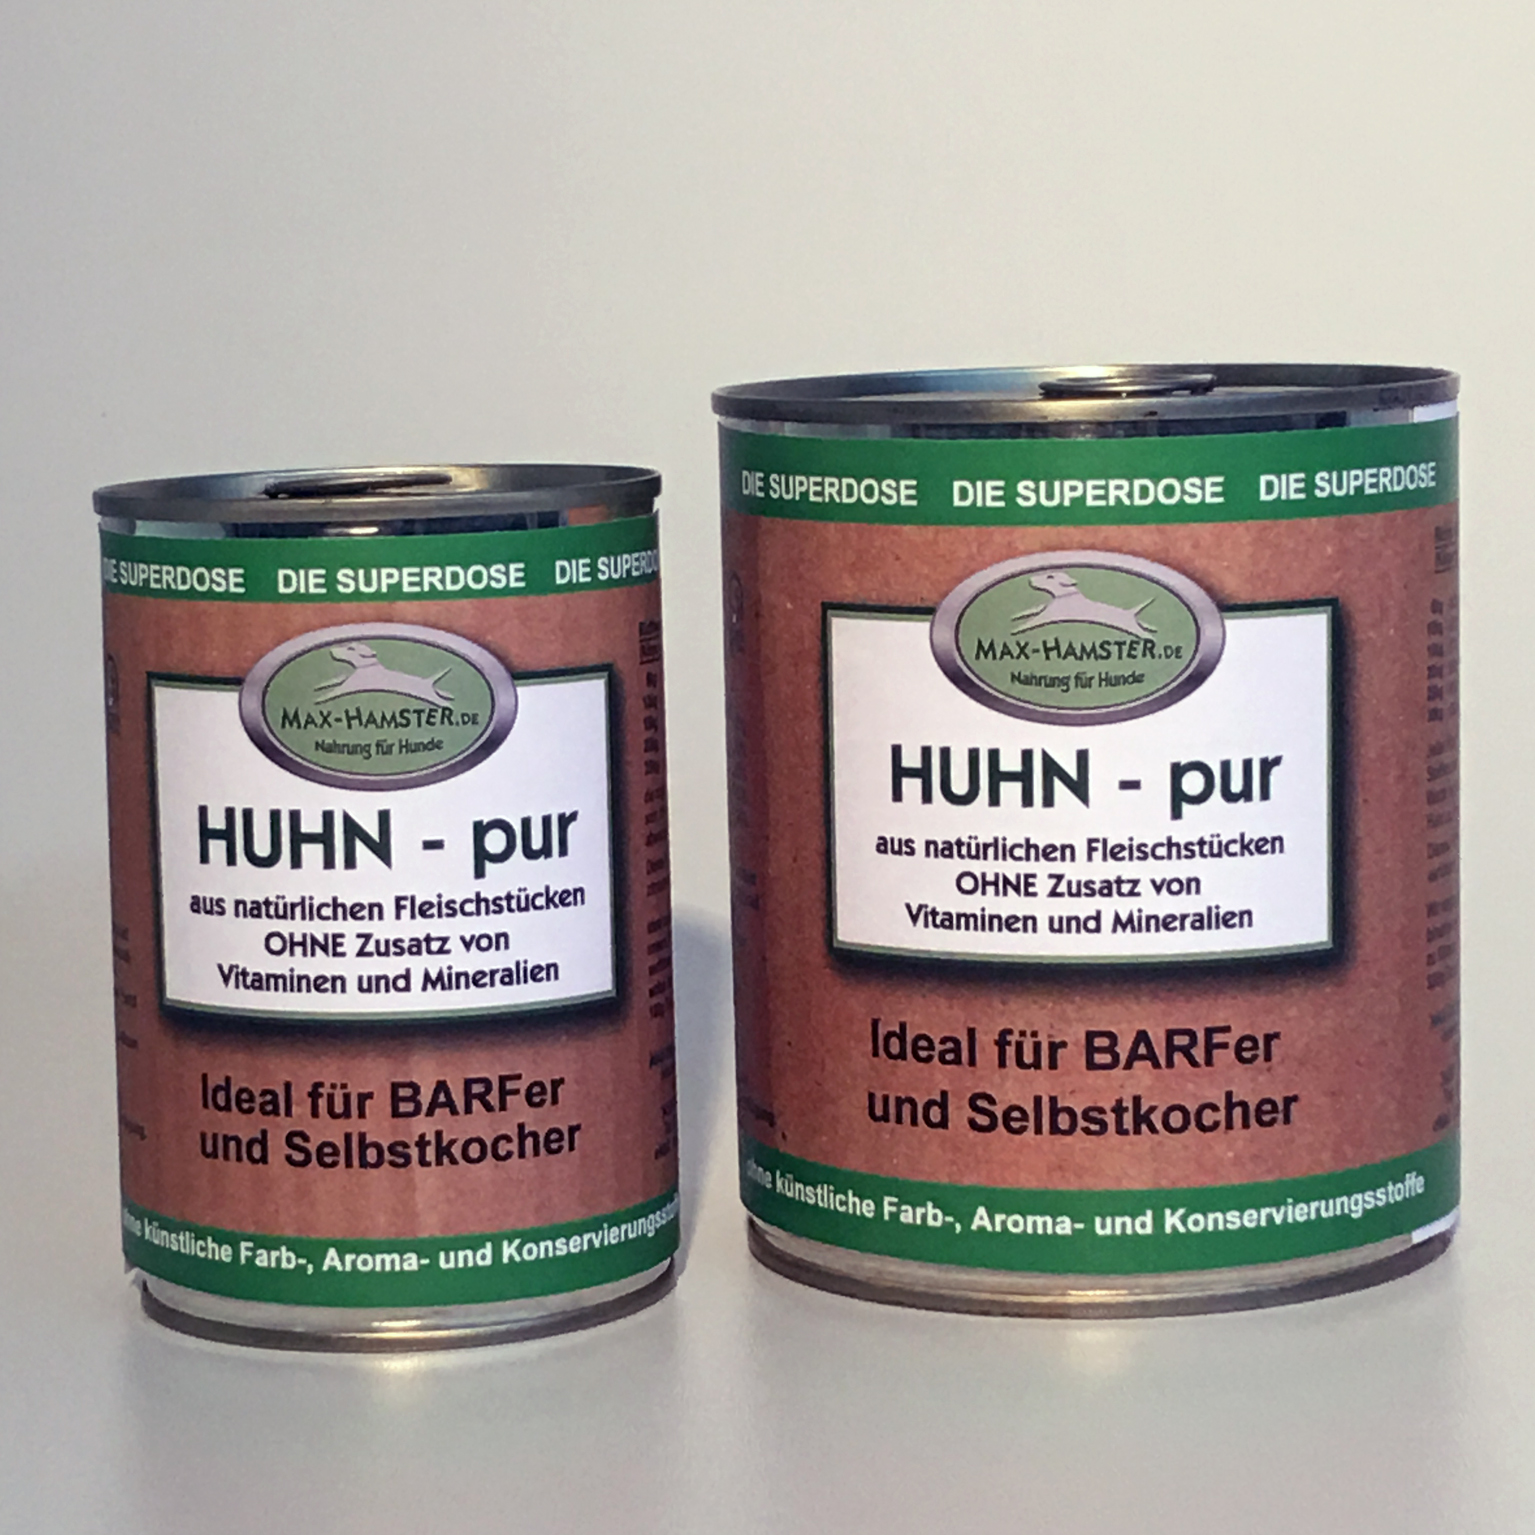 Huhn - pur   Premium Dosenfleisch OHNE Zusätze  1x 400g